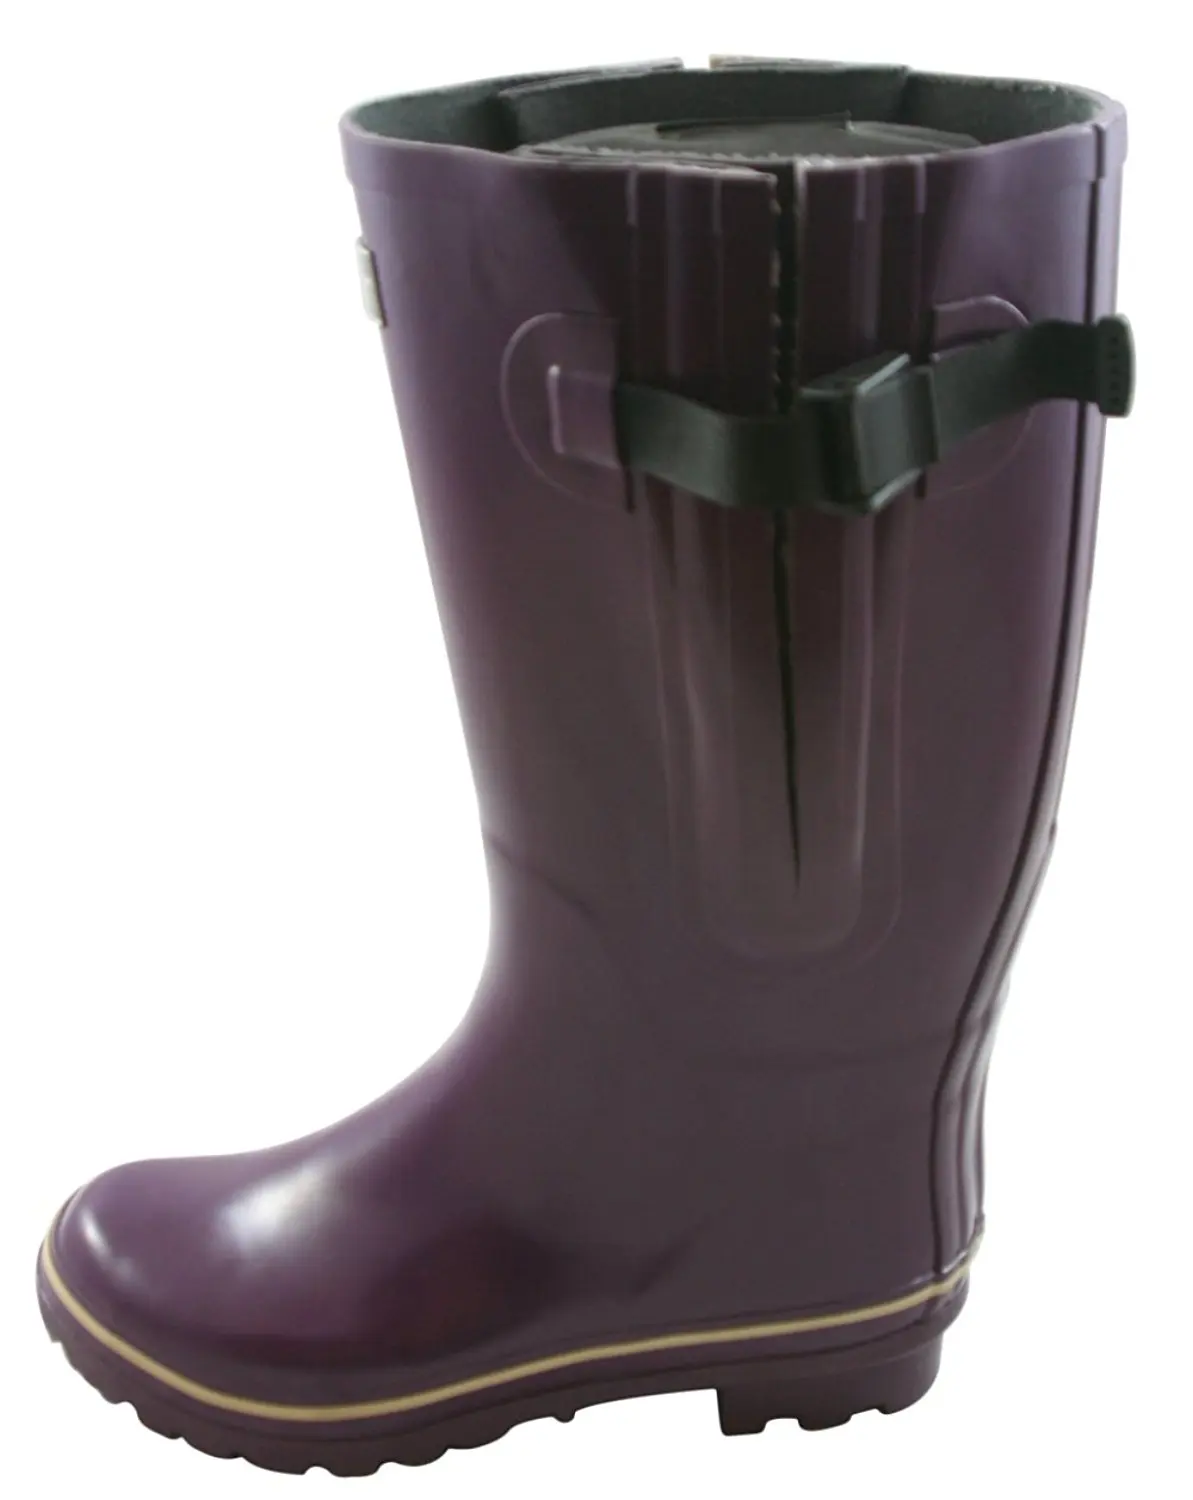 rain boots for big calves